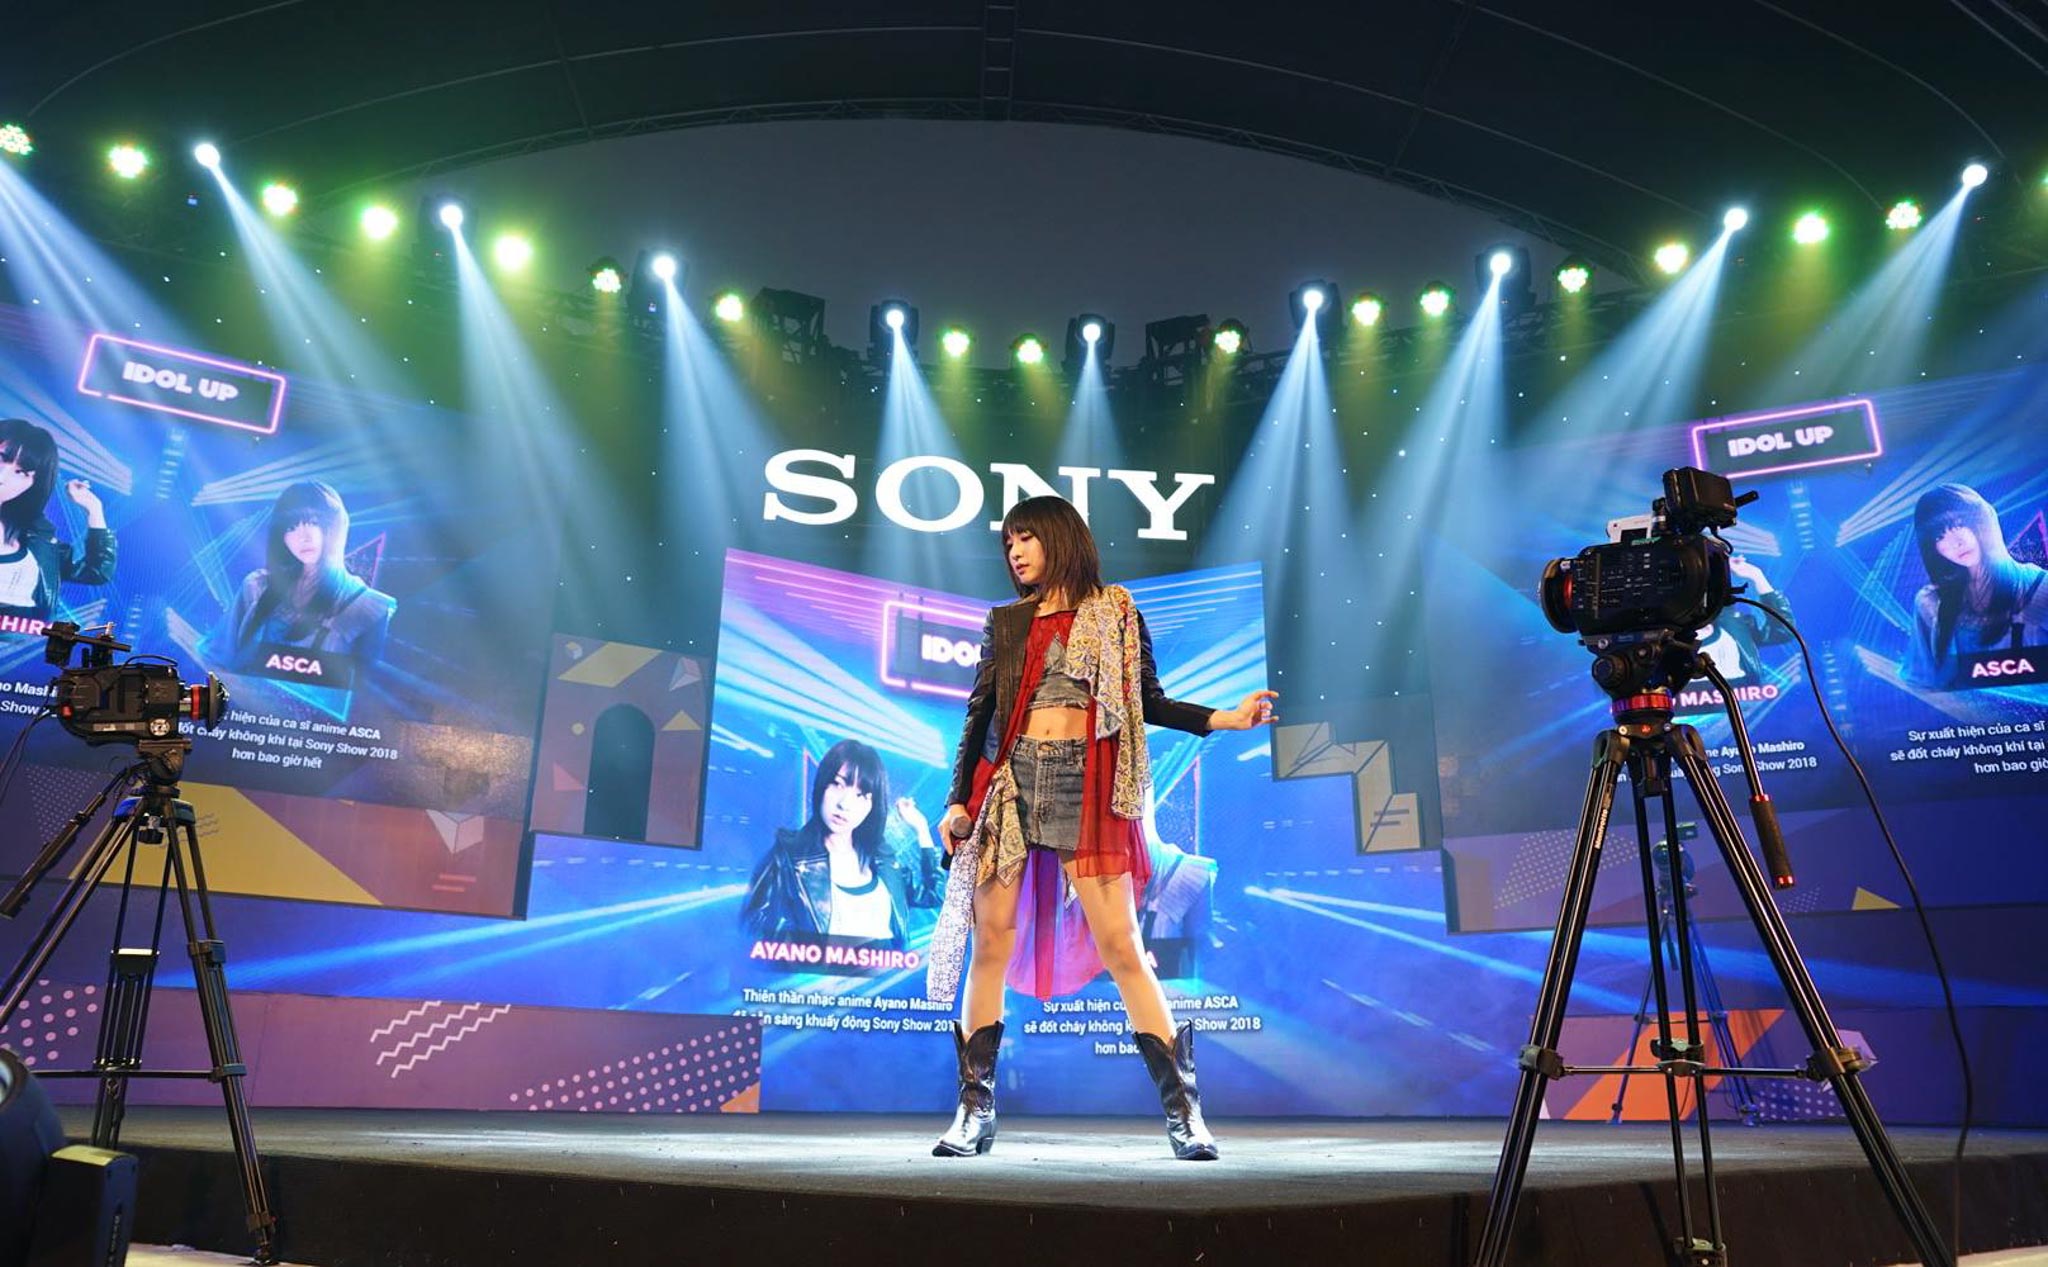 Bộ đôi ca sĩ Ayano Mashiro và ASCA đem không khí anime Nhật Bản đến với Sony Show 2018